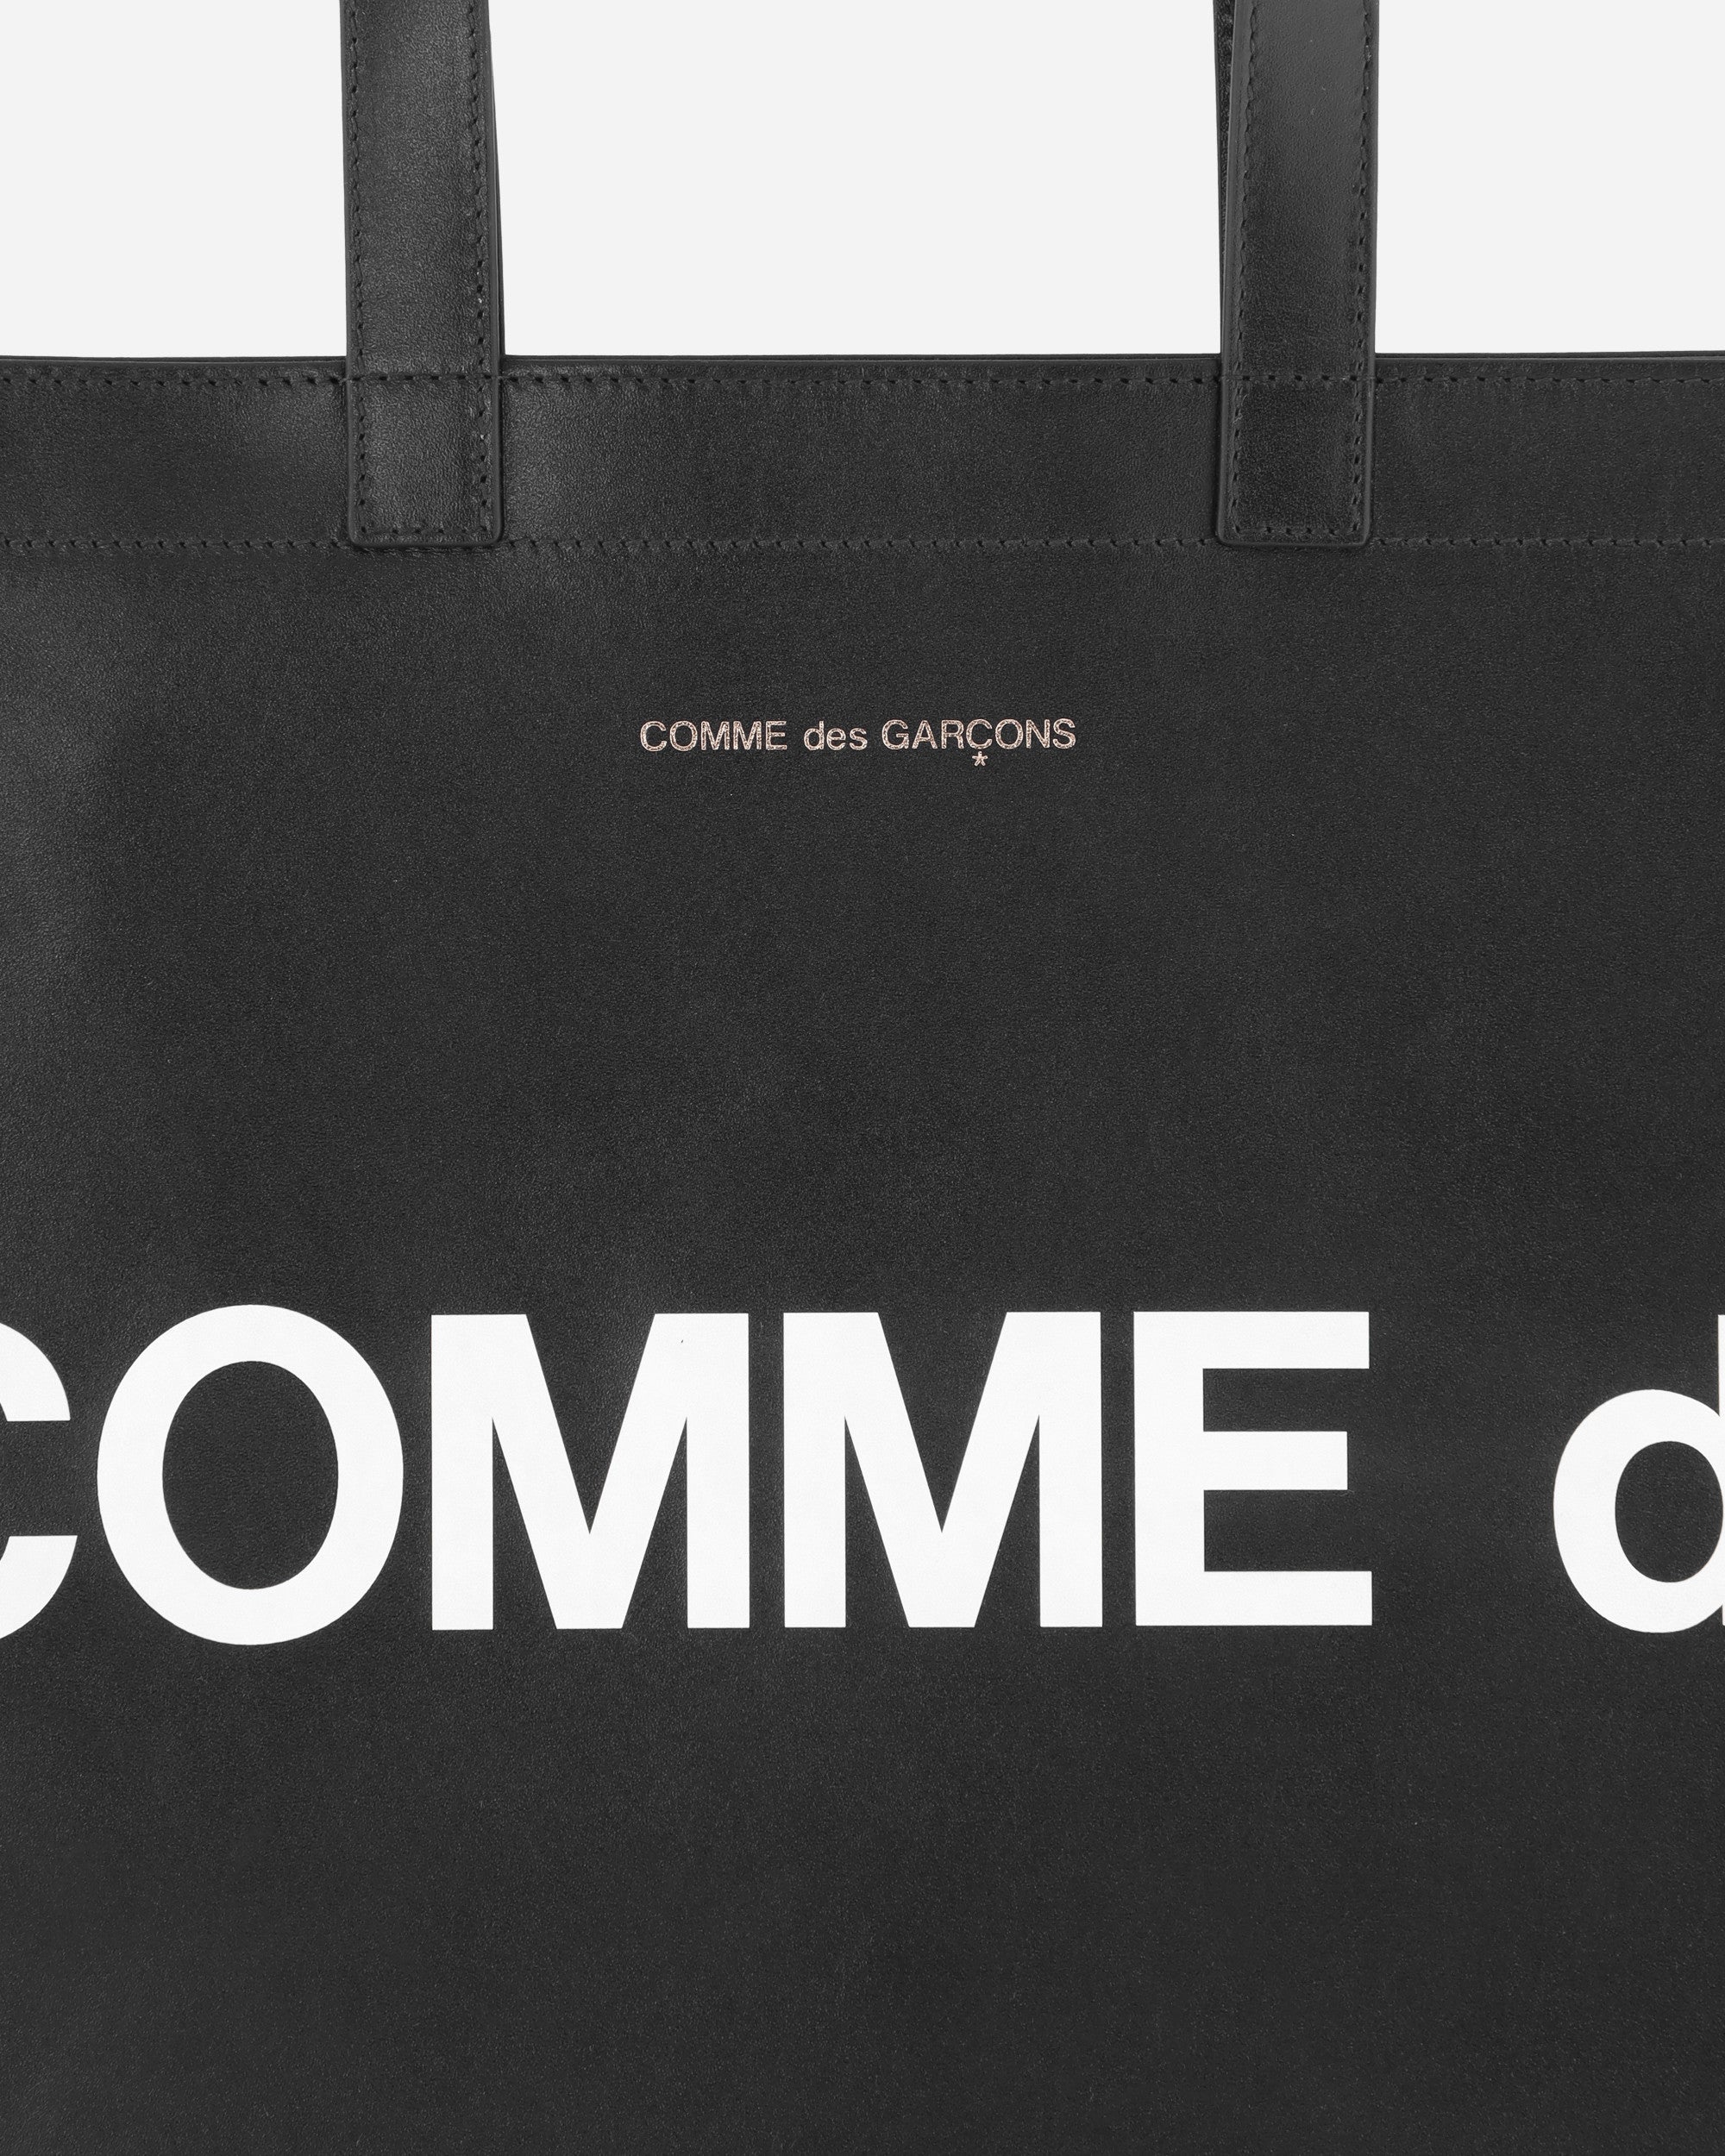 Comme Des Garçons Wallet Huge Logo Tote Bag Black Bags and Backpacks Tote SA9001HL 1